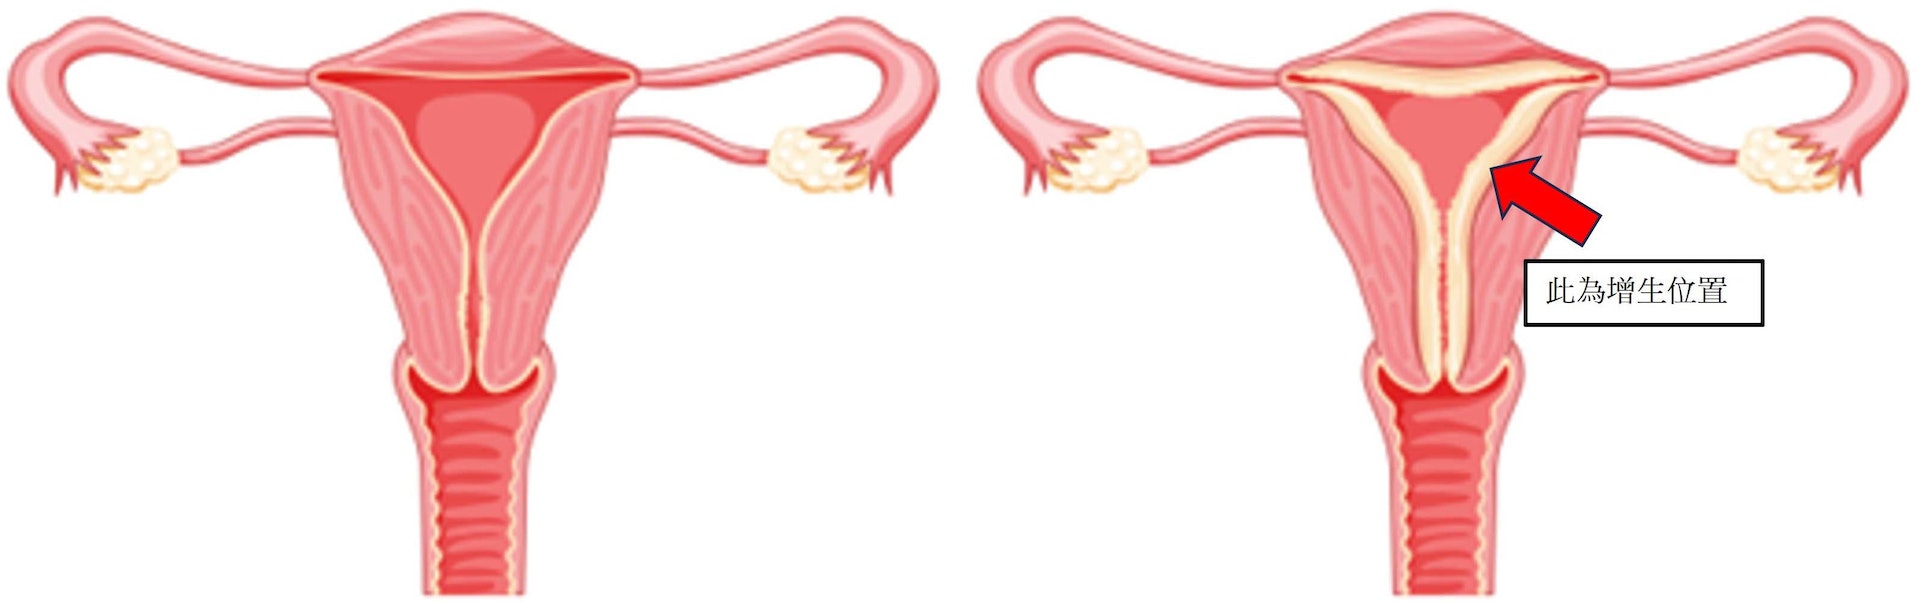 雌激素會刺激子宮內膜細胞過度增生，當缺乏黃體素制衡，便會造成子宮內膜增生。(左為正常子宮、右為子宮內膜增生)